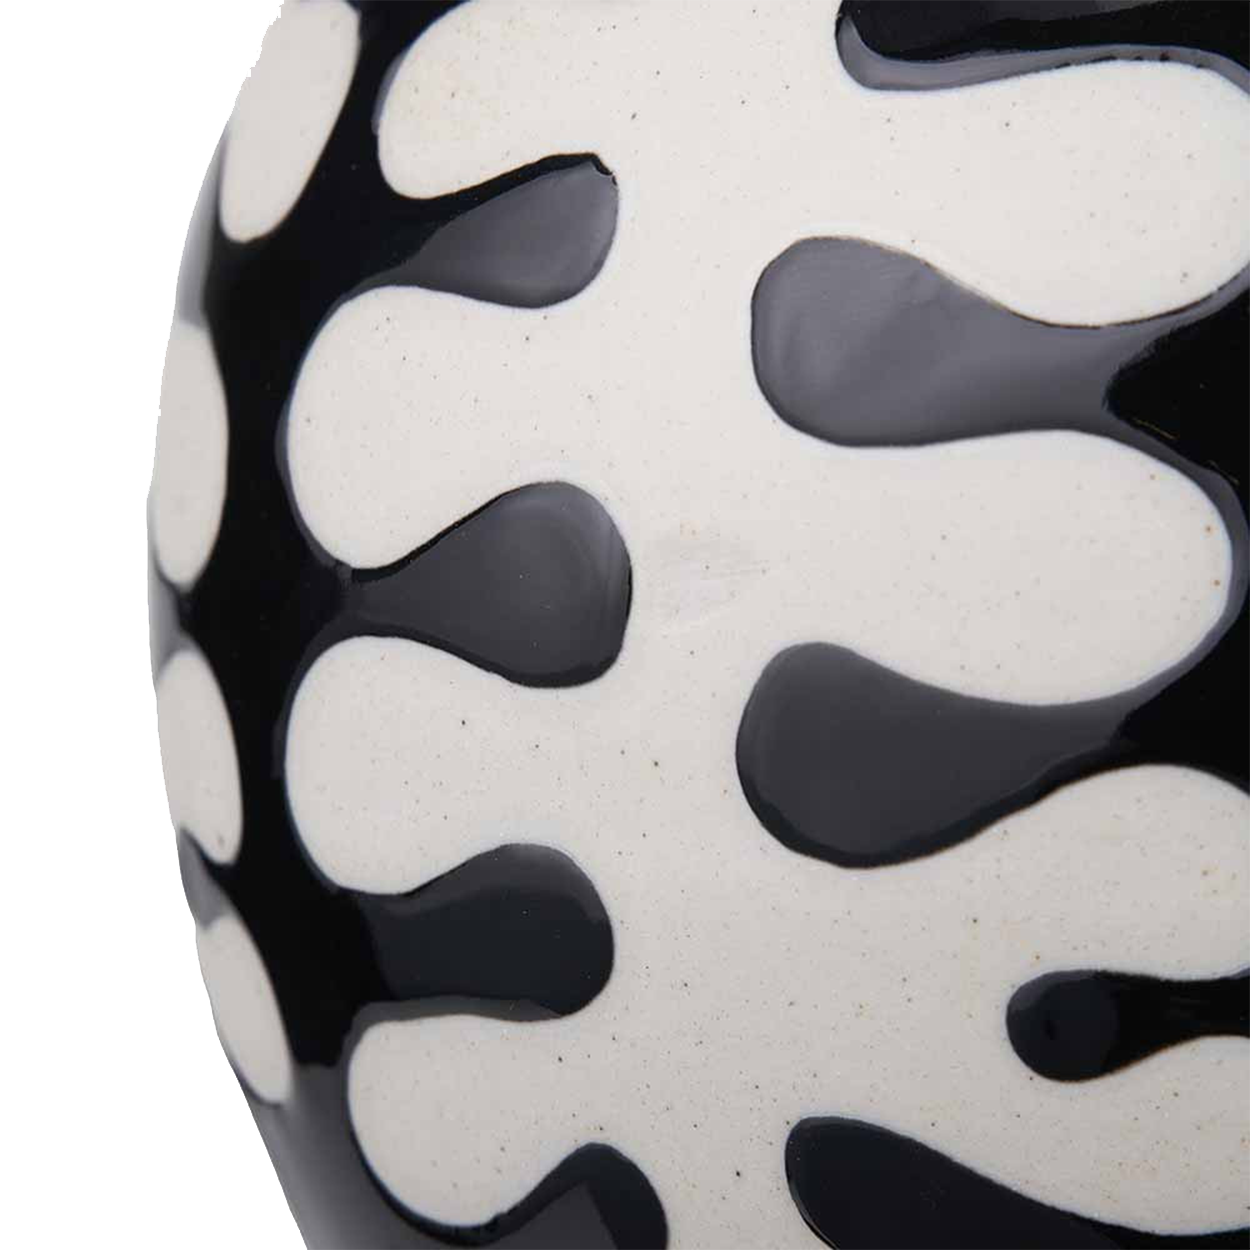 Elkorn Black and White Ceramic Coral Design Ginger Jar